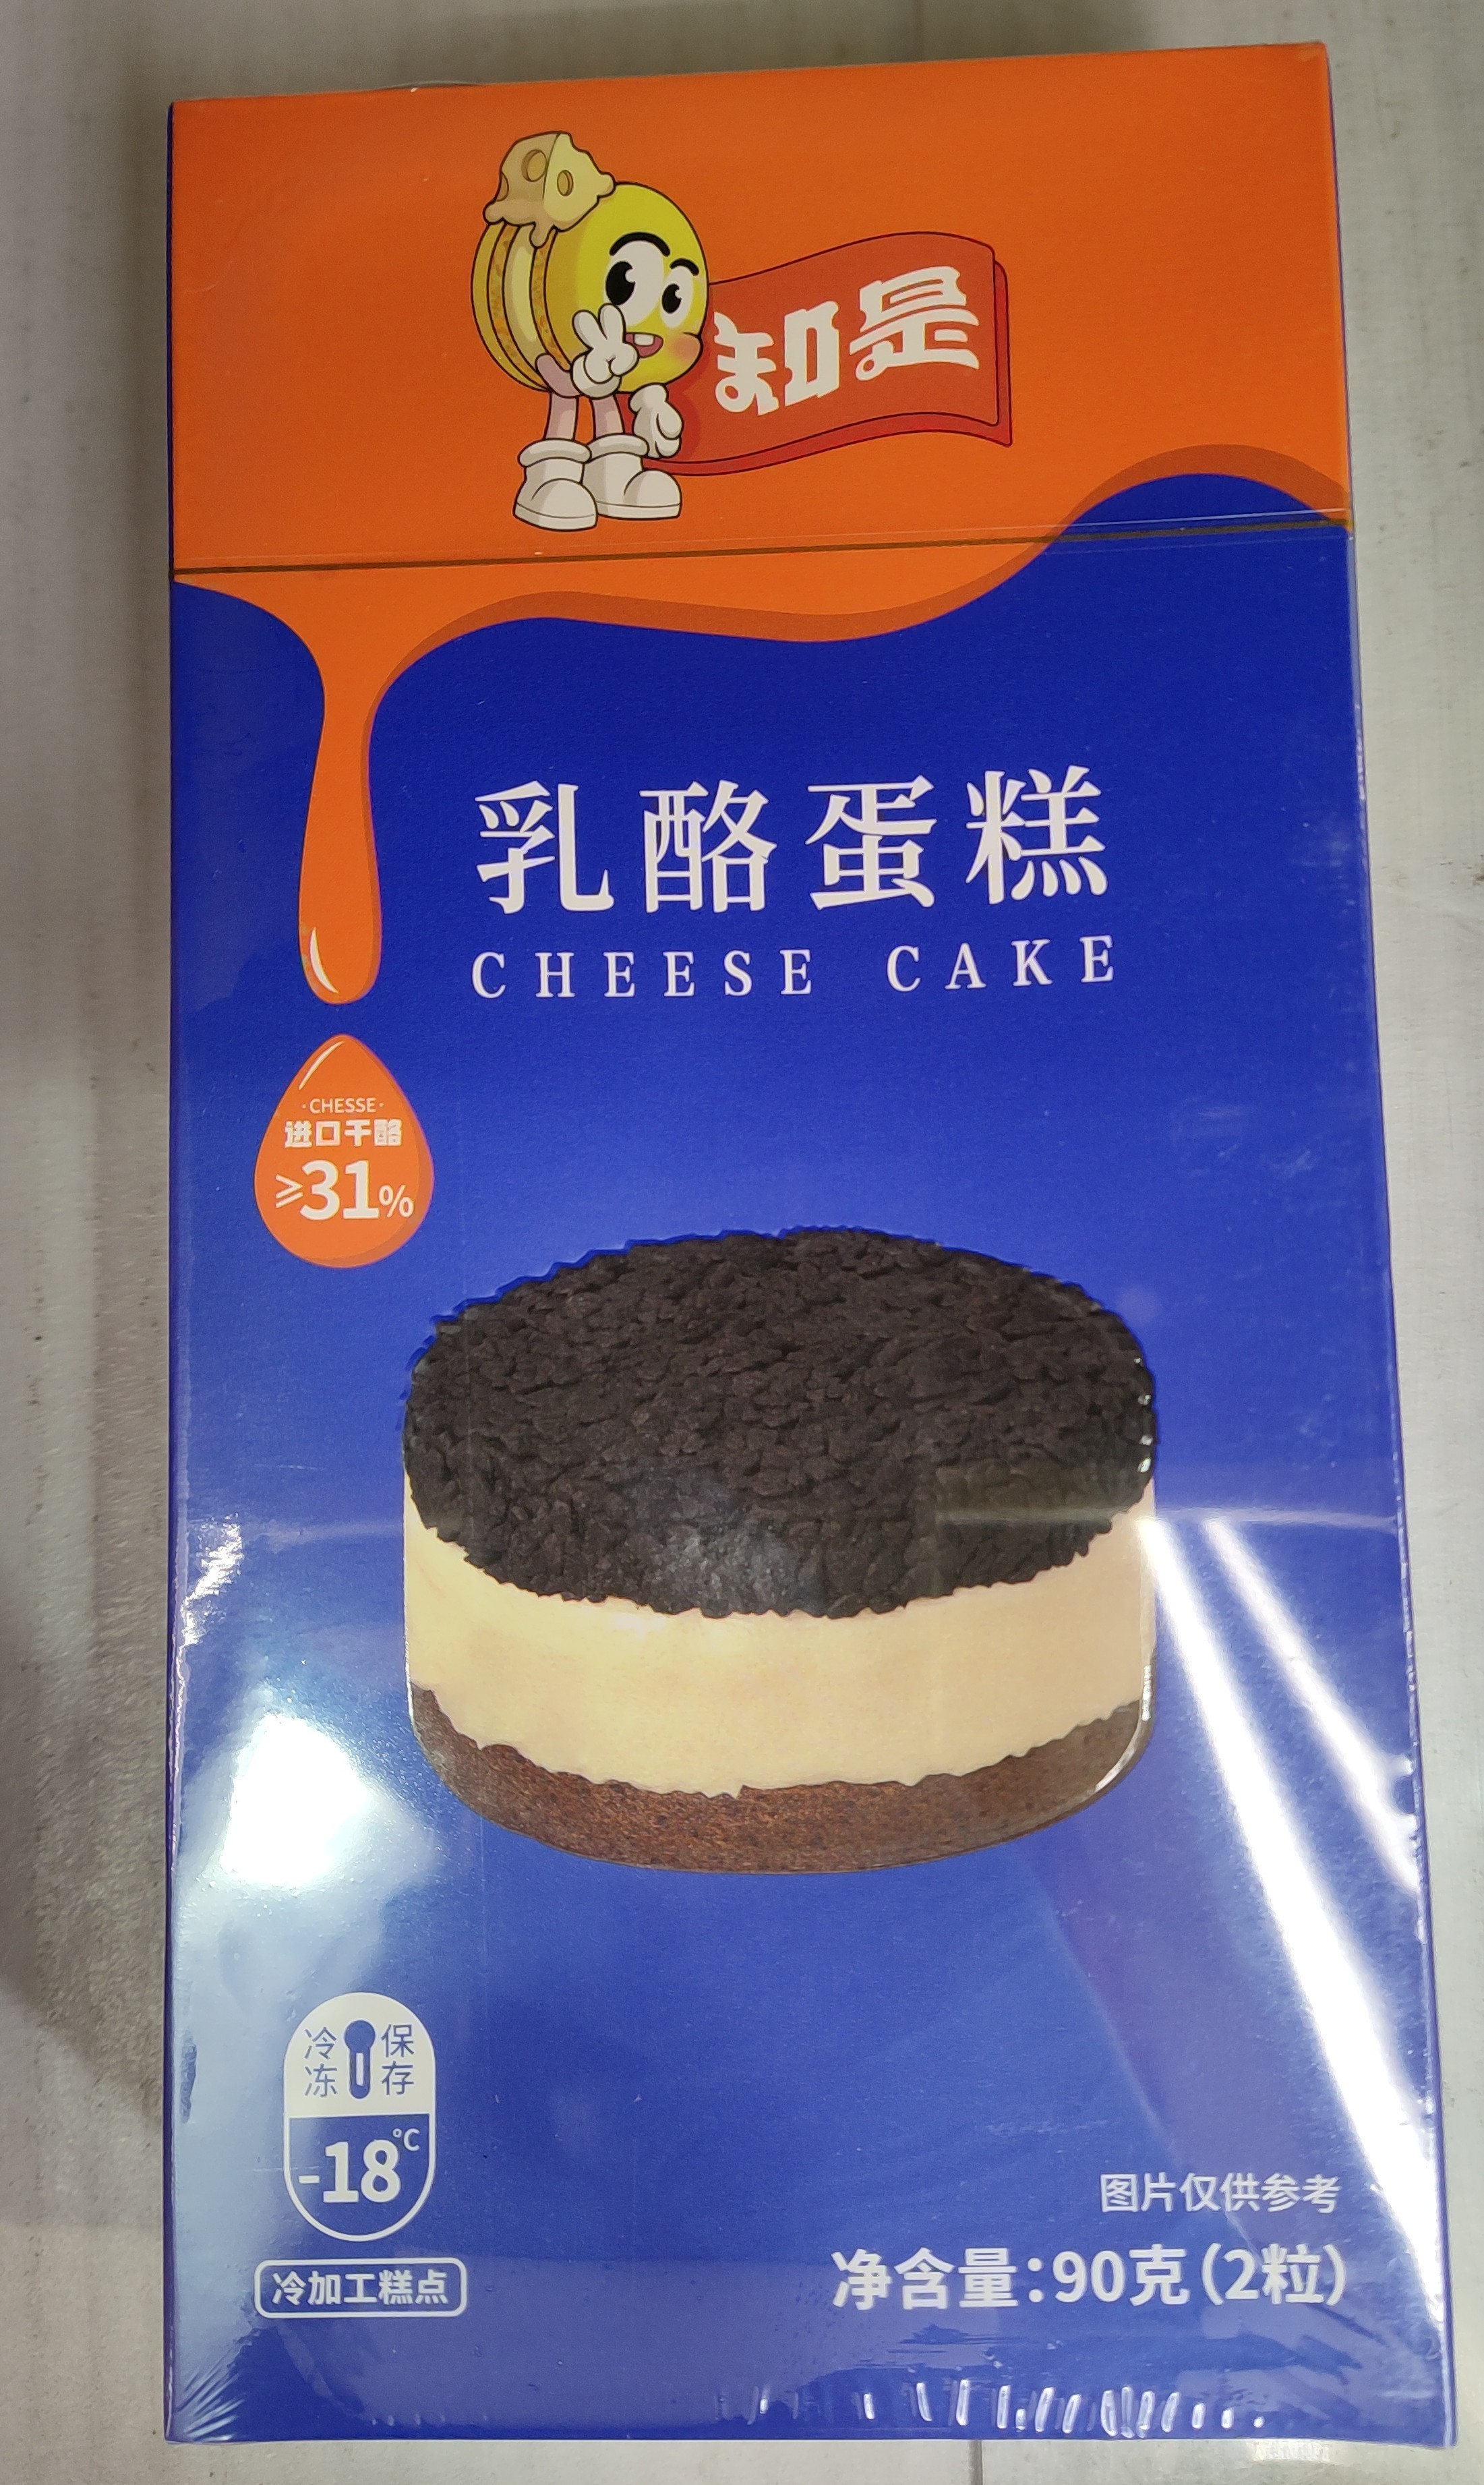 zhishi-frozen-cheese-cake